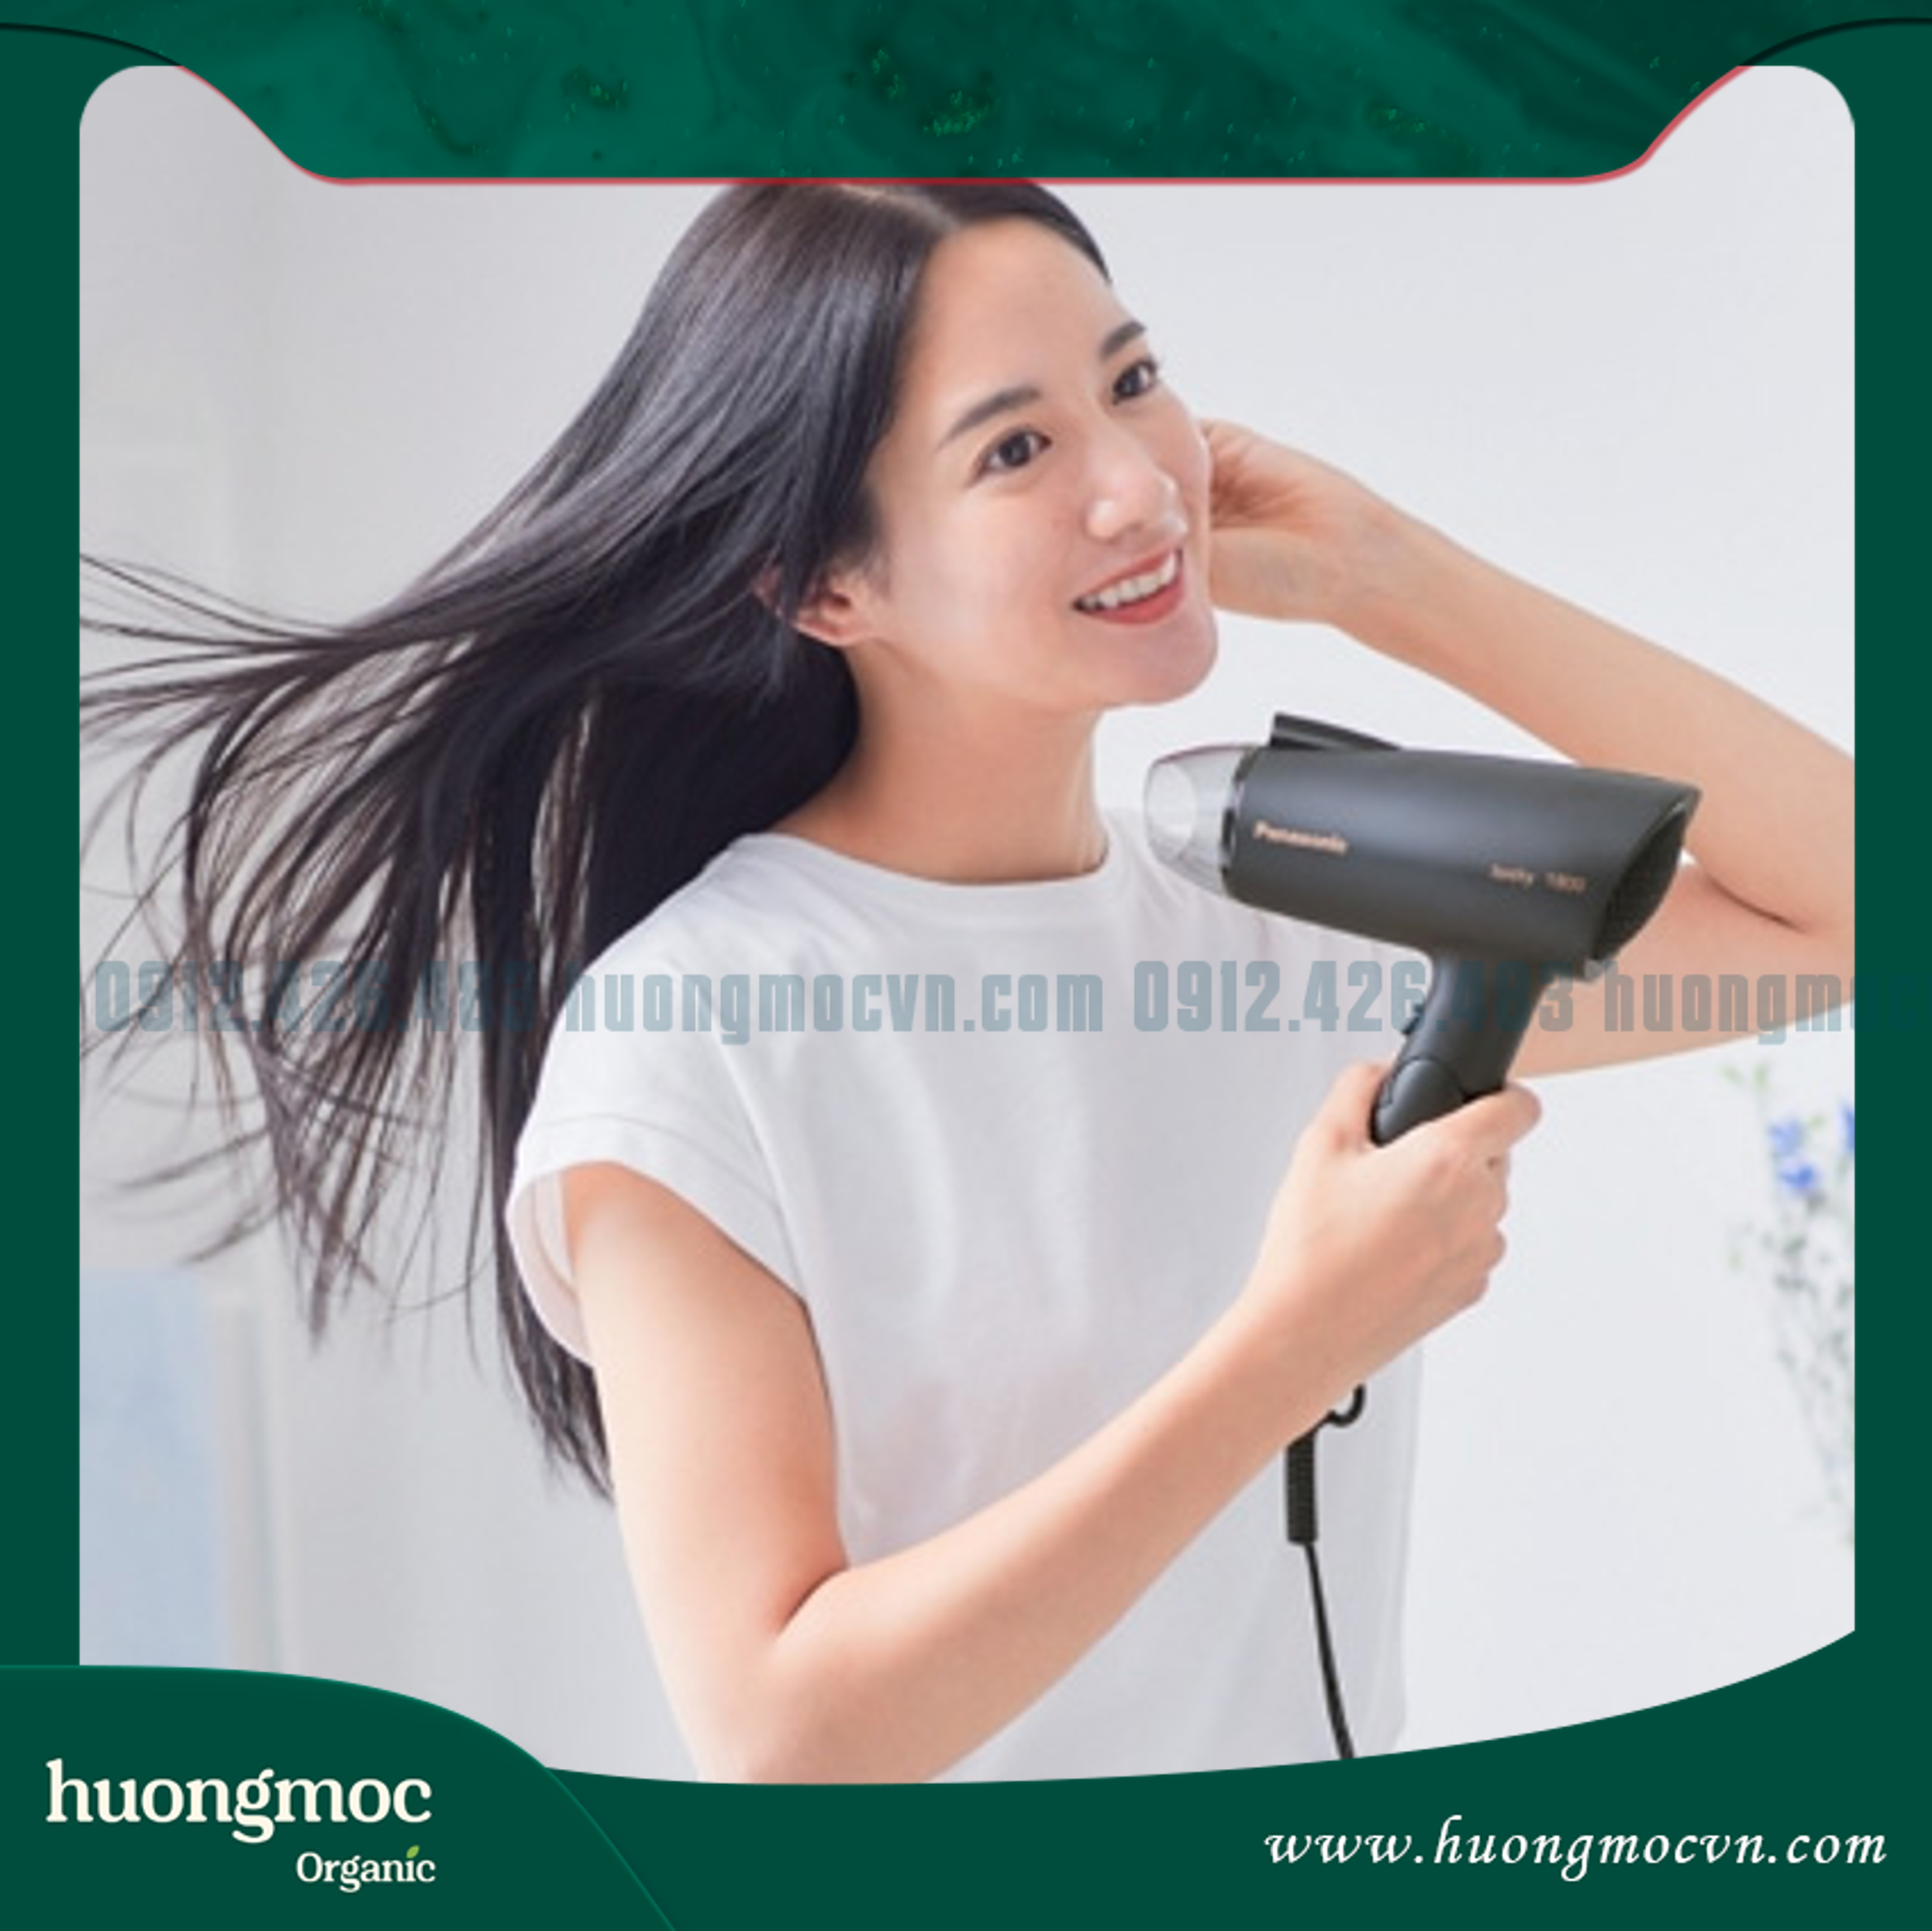 Hạn chế tác động nhiệt lên tóc là bí quyết giúp dưỡng tóc nhuộm không bị phai màu